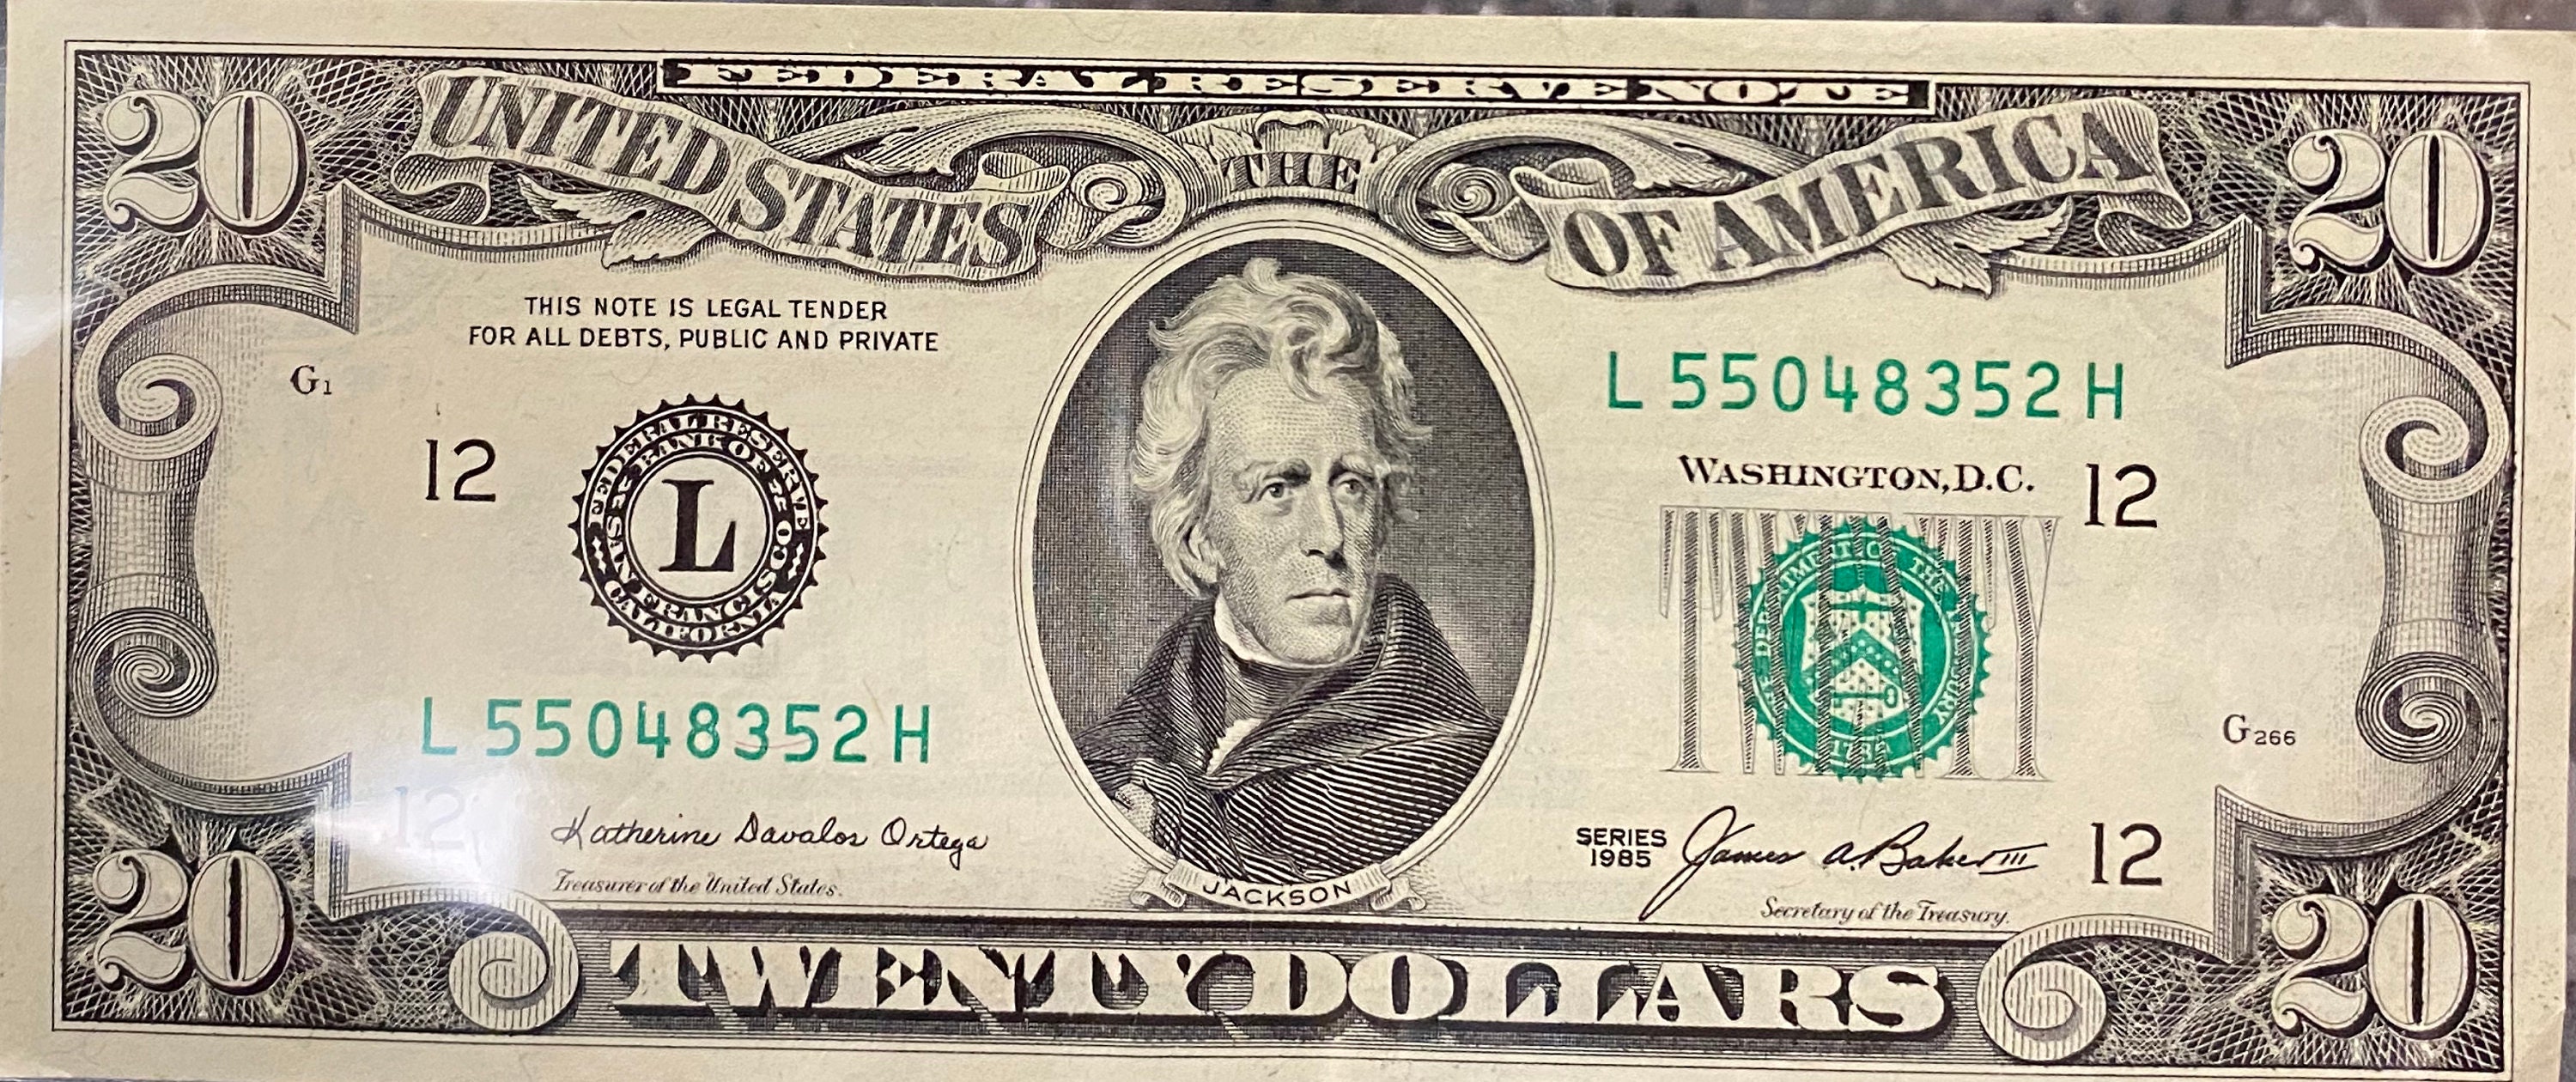 1985 Vintage 20 Dollar Bill